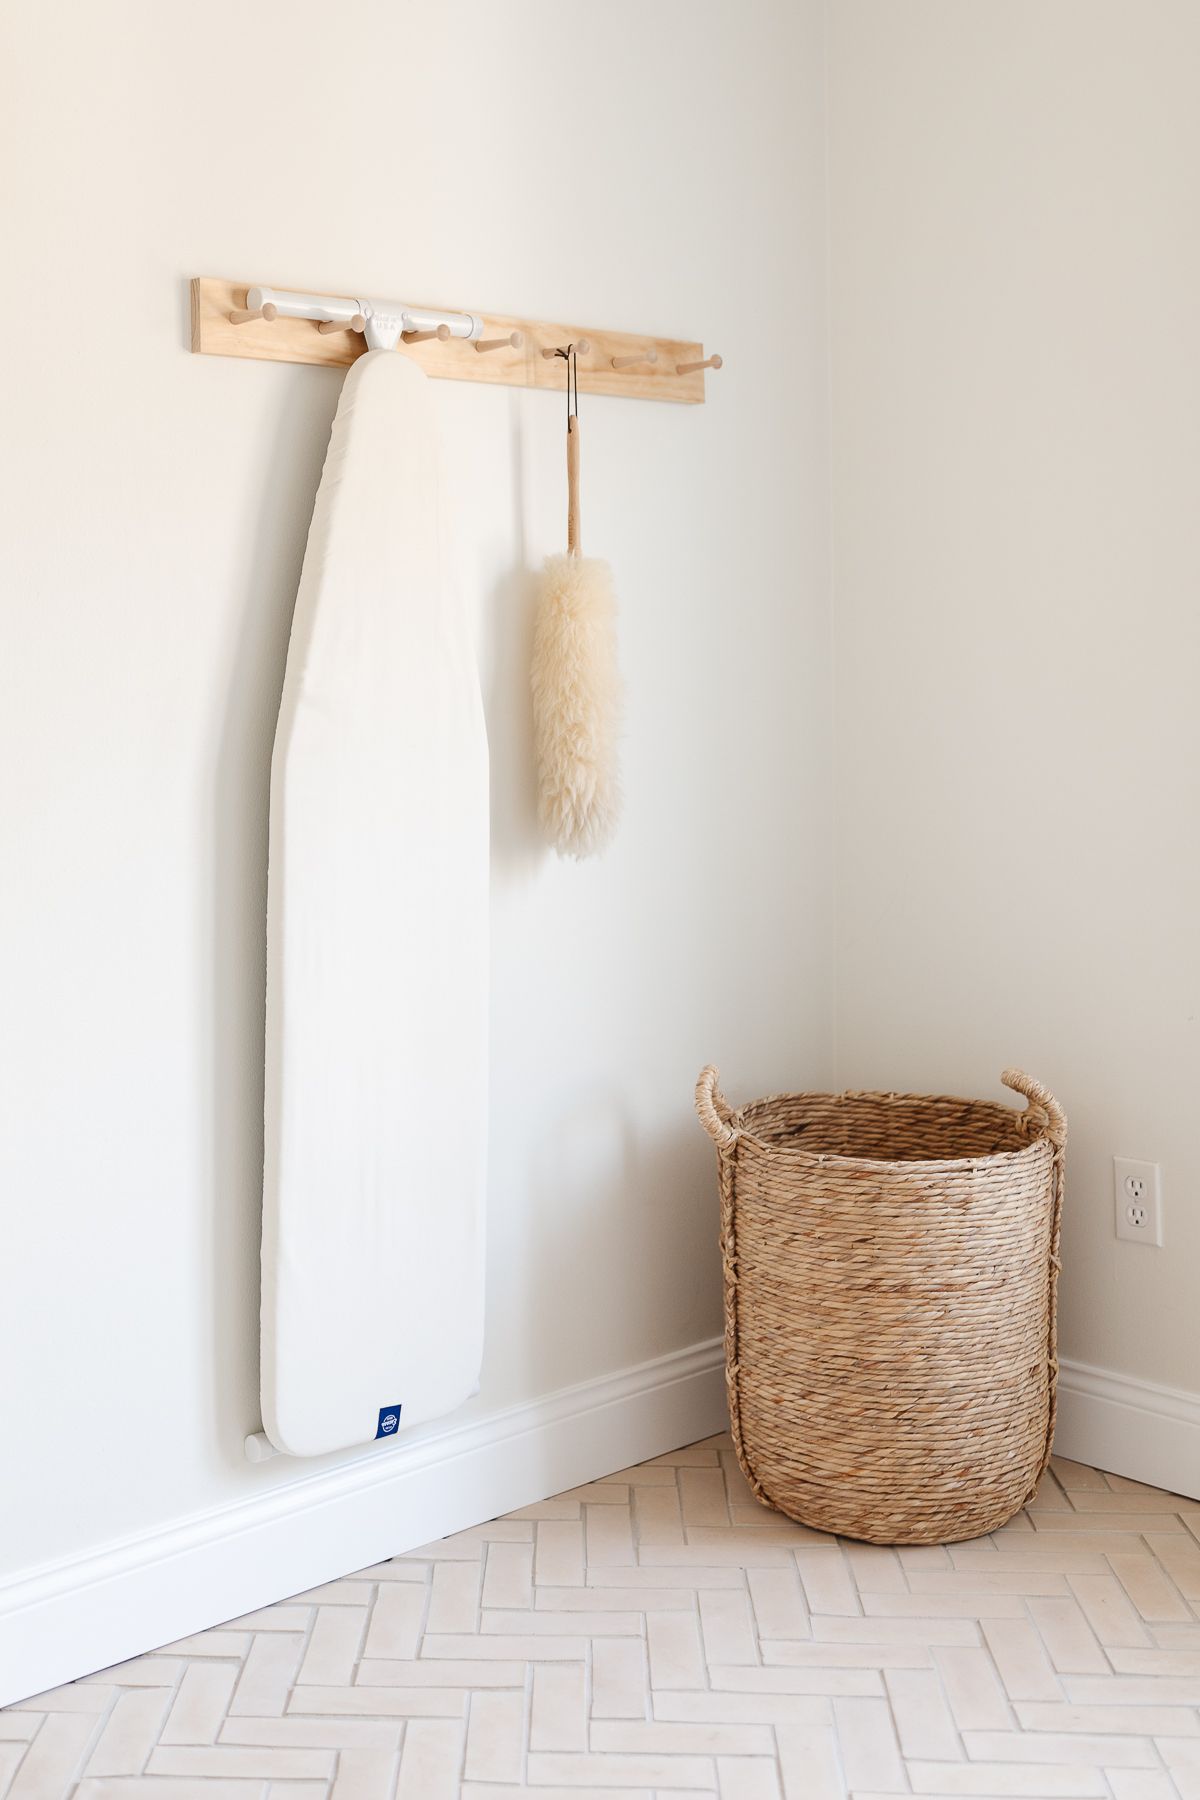 一个带人字形地板的洗衣房的角落和带有熨衣板的钉轨。